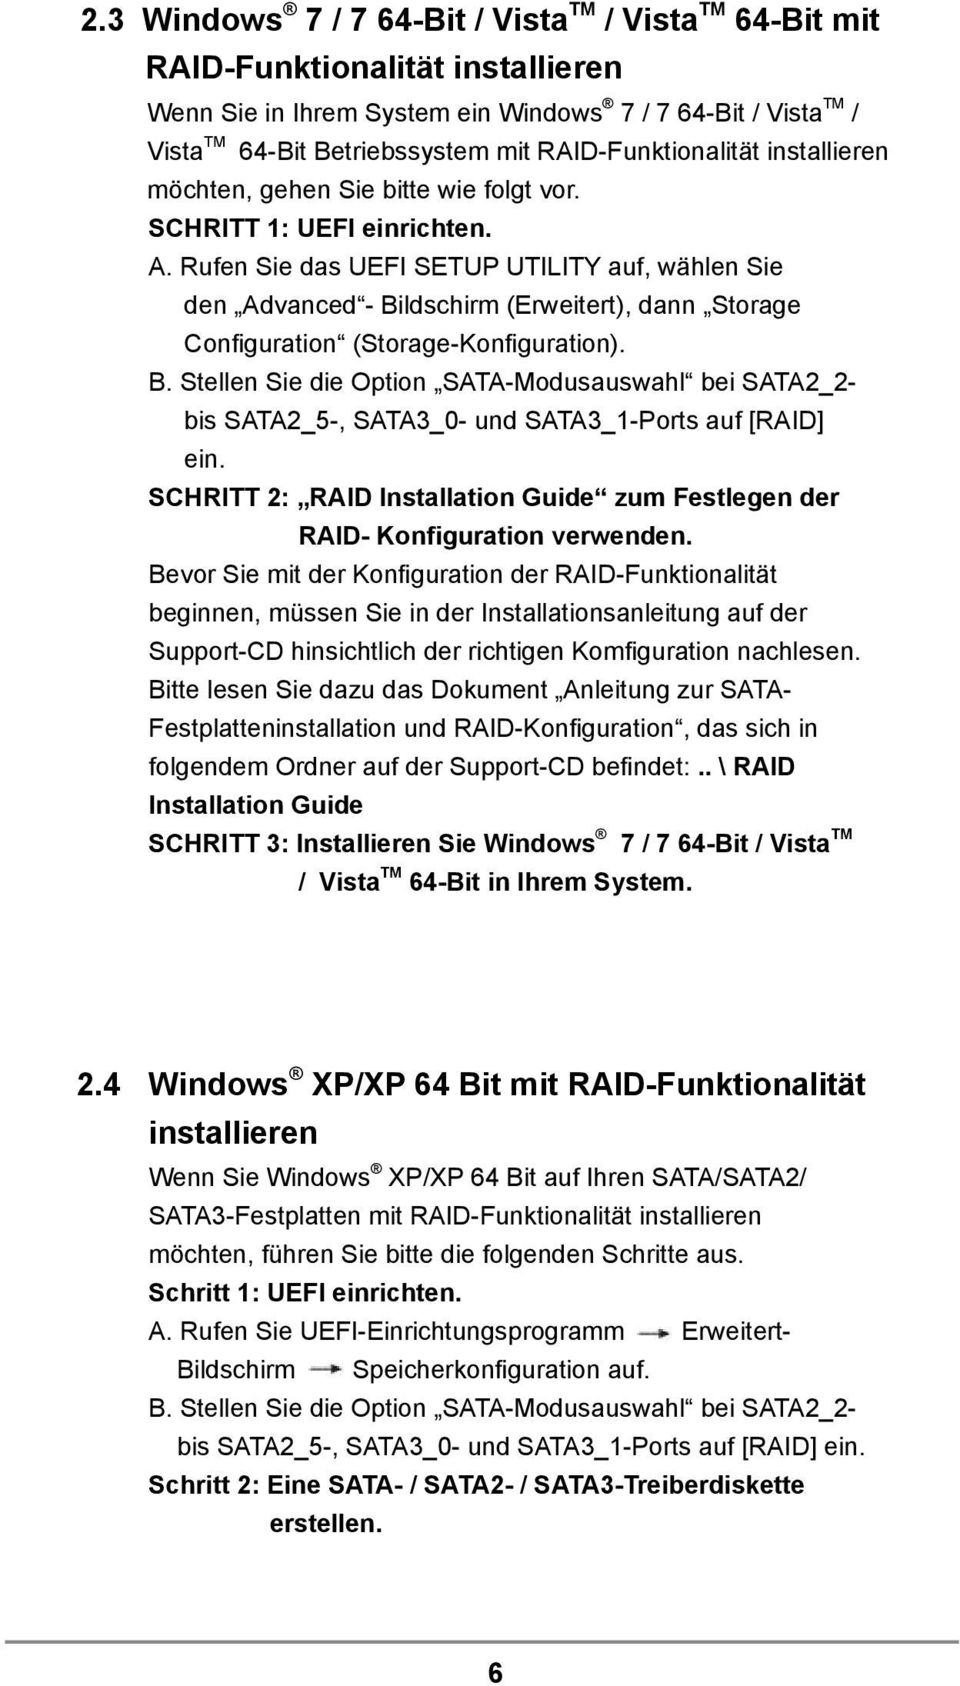 Rufen Sie das UEFI SETUP UTILITY auf, wählen Sie den Advanced - Bildschirm (Erweitert), dann Storage Configuration (Storage-Konfiguration). B. Stellen Sie die Option SATA-Modusauswahl bei SATA2_2- bis SATA2_5-, SATA3_0- und SATA3_1-Ports auf [RAID] ein.